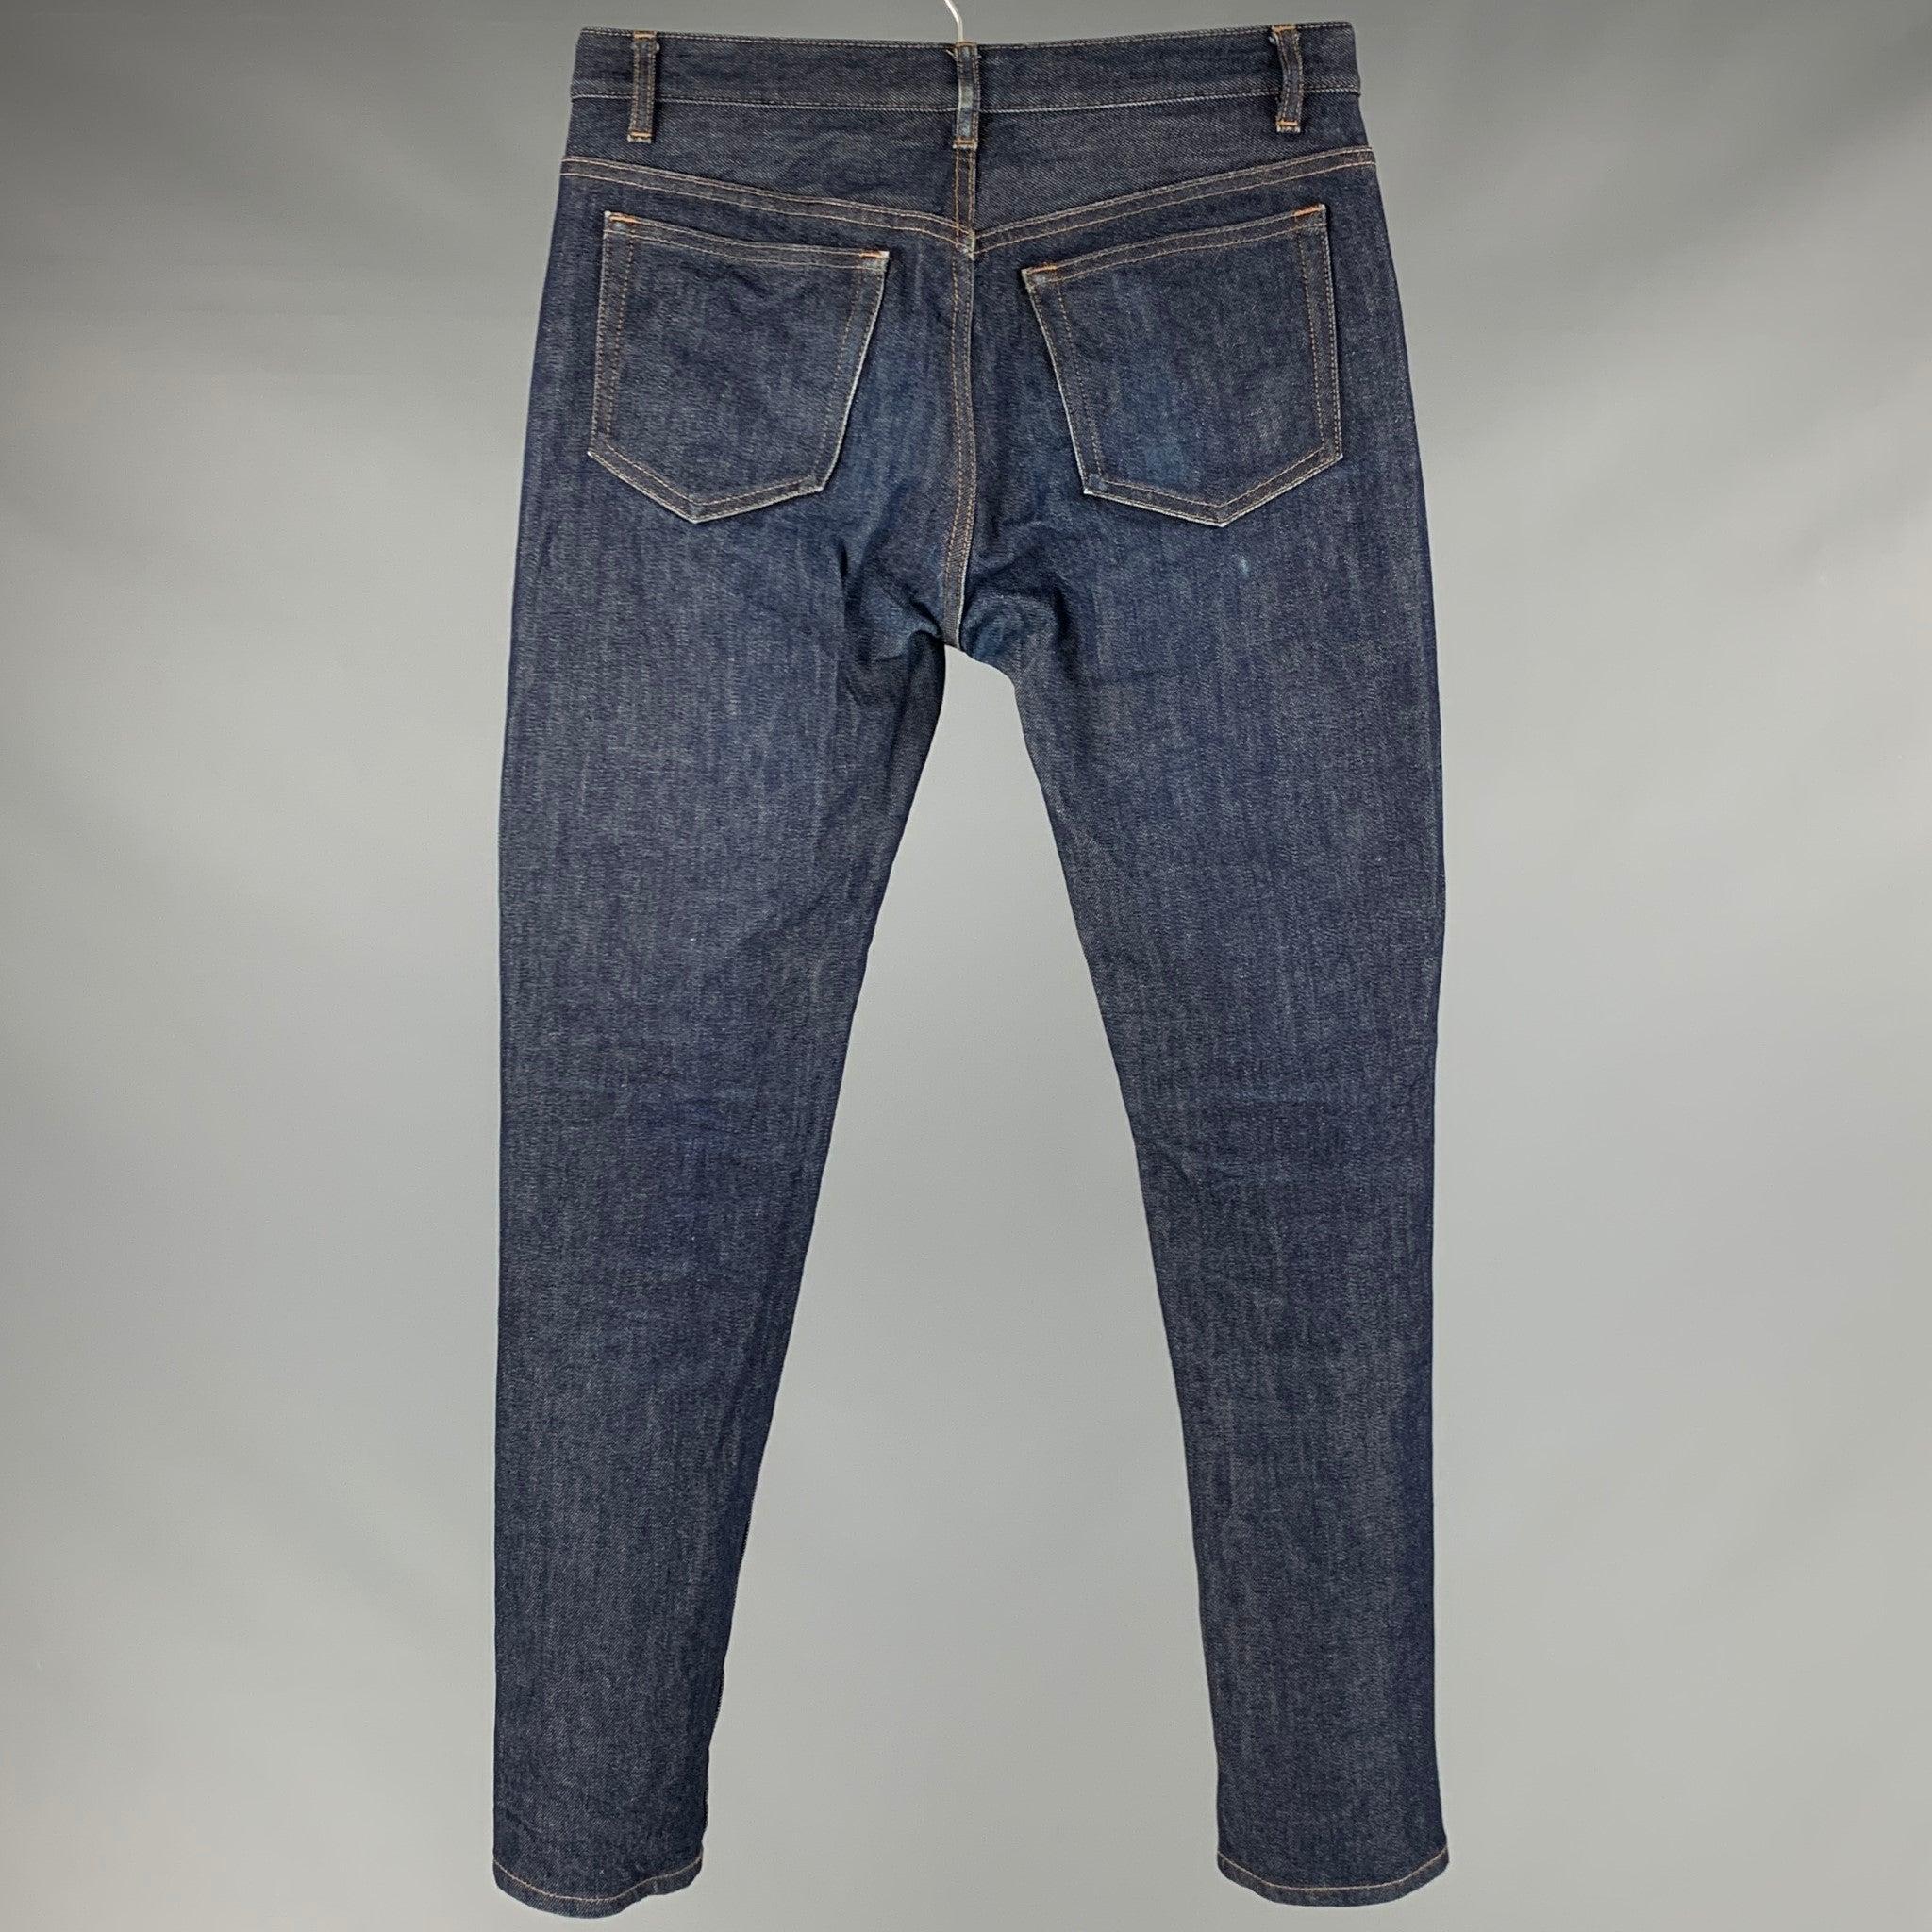 A.P.C. Jeans
aus blauem Baumwollmischgewebe mit Kontrastnähten, fünf Taschen und Schlitzverschluss mit Knopf. Sehr guter, gebrauchter Zustand. Geringfügige Mängel. 

Markiert:   29 

Abmessungen: 
  Taille: 29 Zoll Steigung: 8 Zoll Innennaht: 29